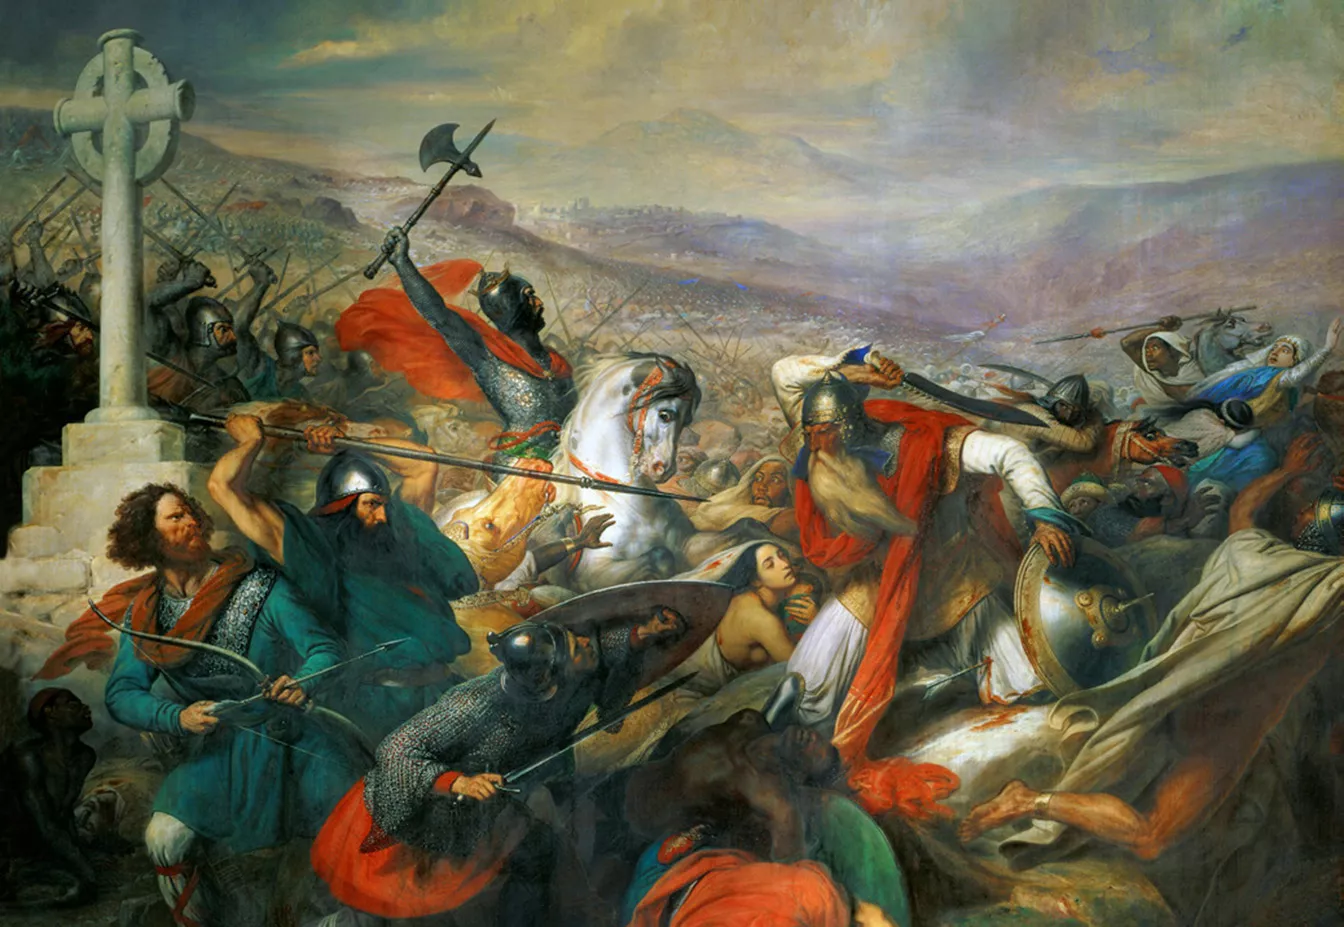 El franc Carles Martell a la batalla de Poitiers, que va ser decisiva. Quadre romàntic del baró Charles von Steuben (1837) al Museu de Versalles